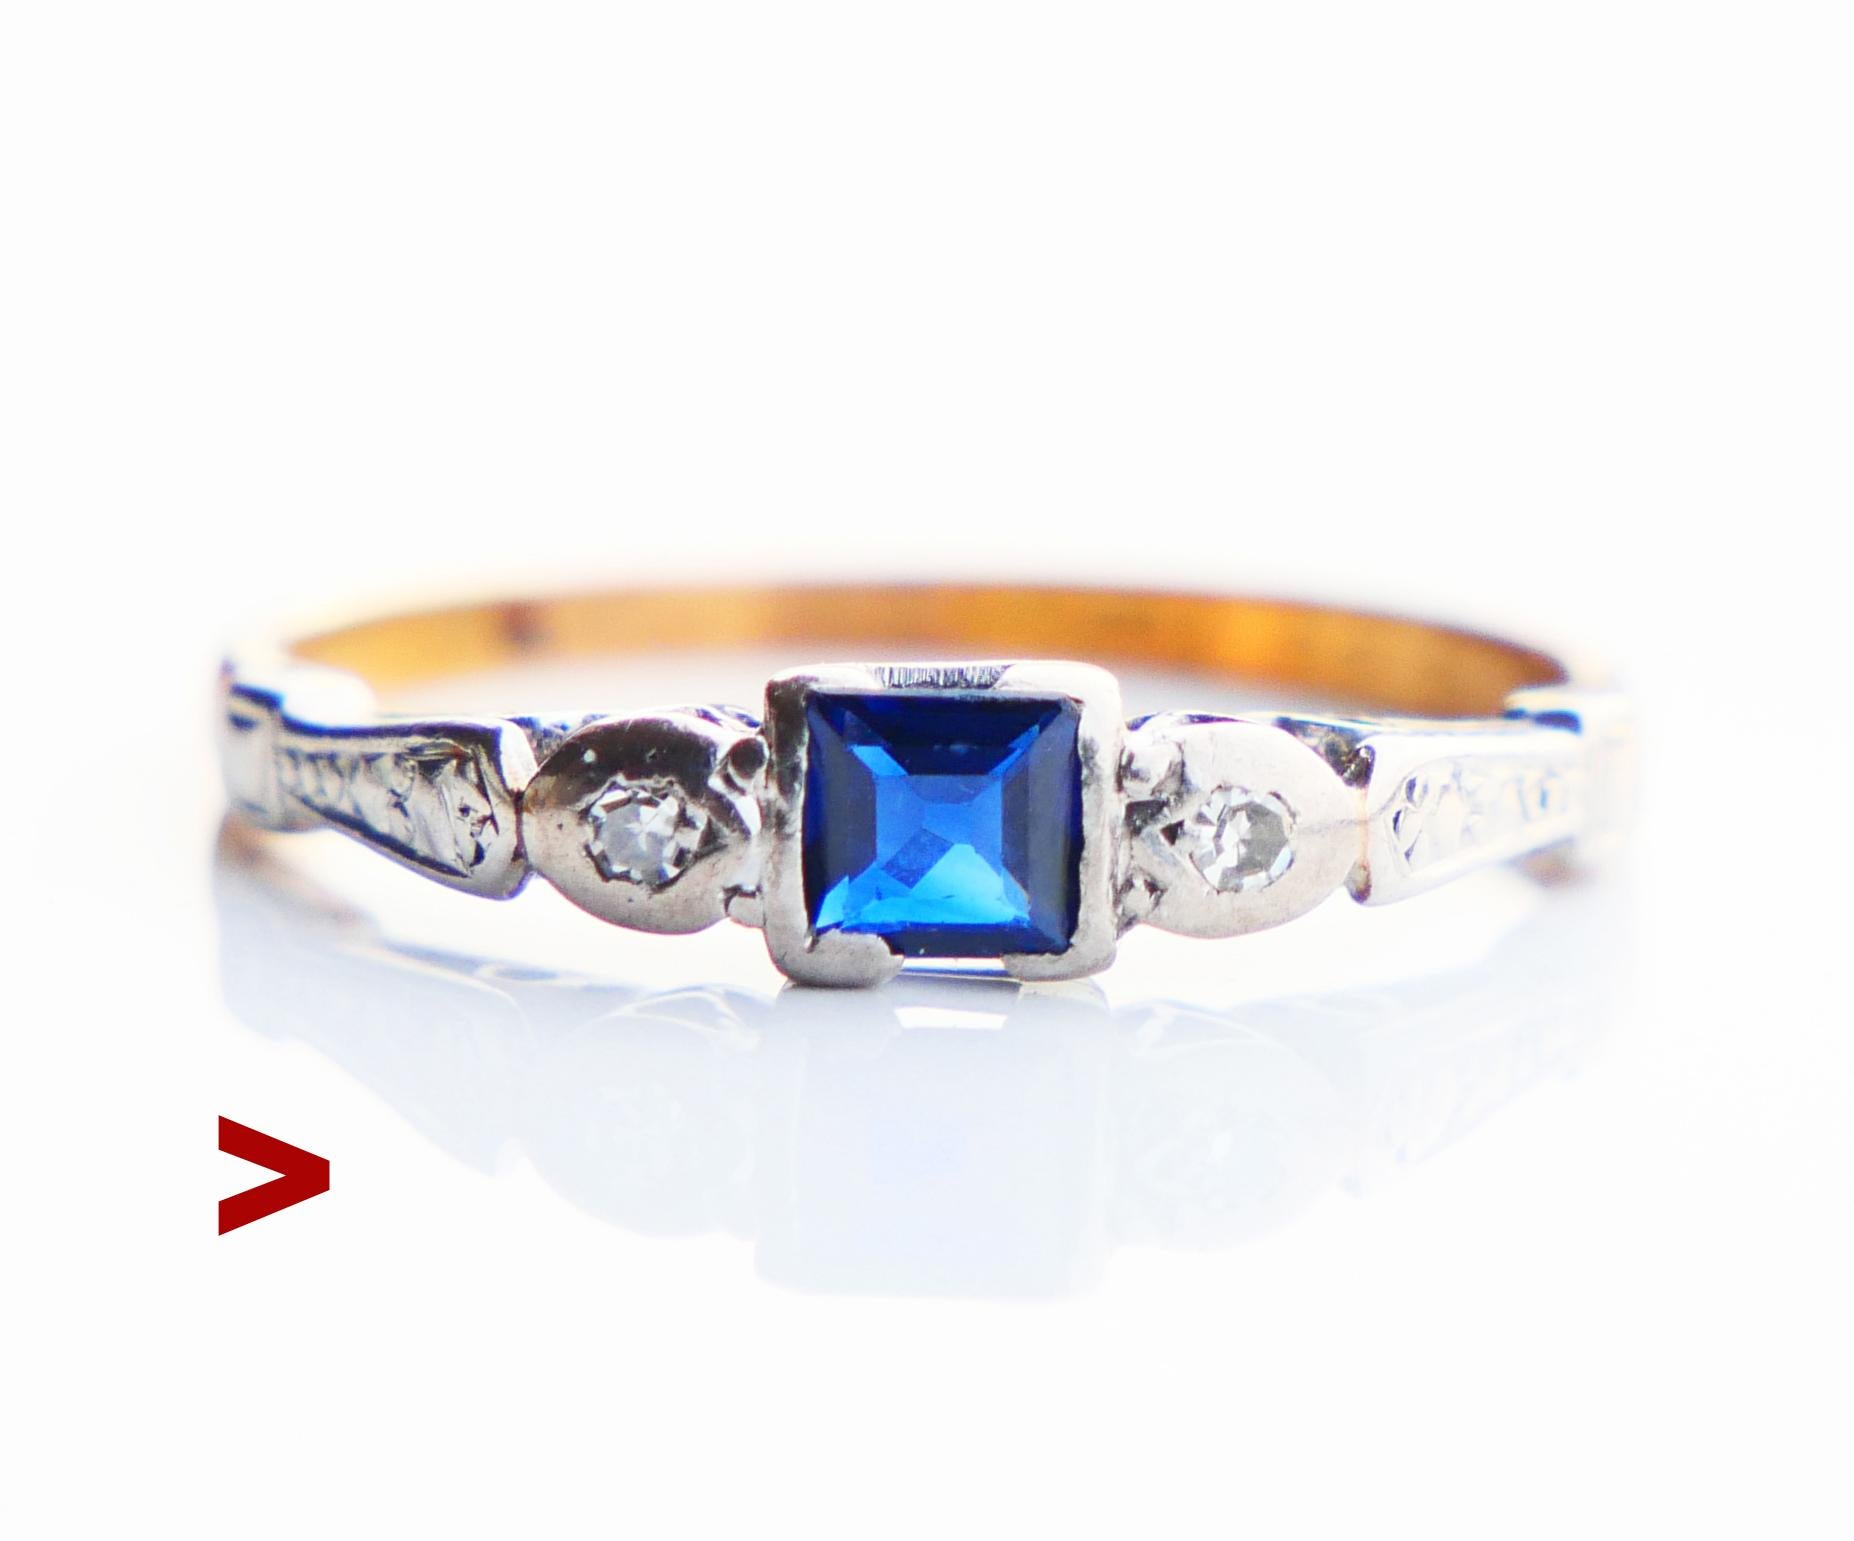 Bague à trois pierres avec un saphir bleu naturel taillé en carré de 4 mm x 4 mm x 1,8 mm de profondeur / ca. 0,5 ct. et deux diamants naturels taillés en diamant ancien de Ø 2 mm / ca. 0,06ct chacun / F,G / VS. Le saphir est naturel de couleur